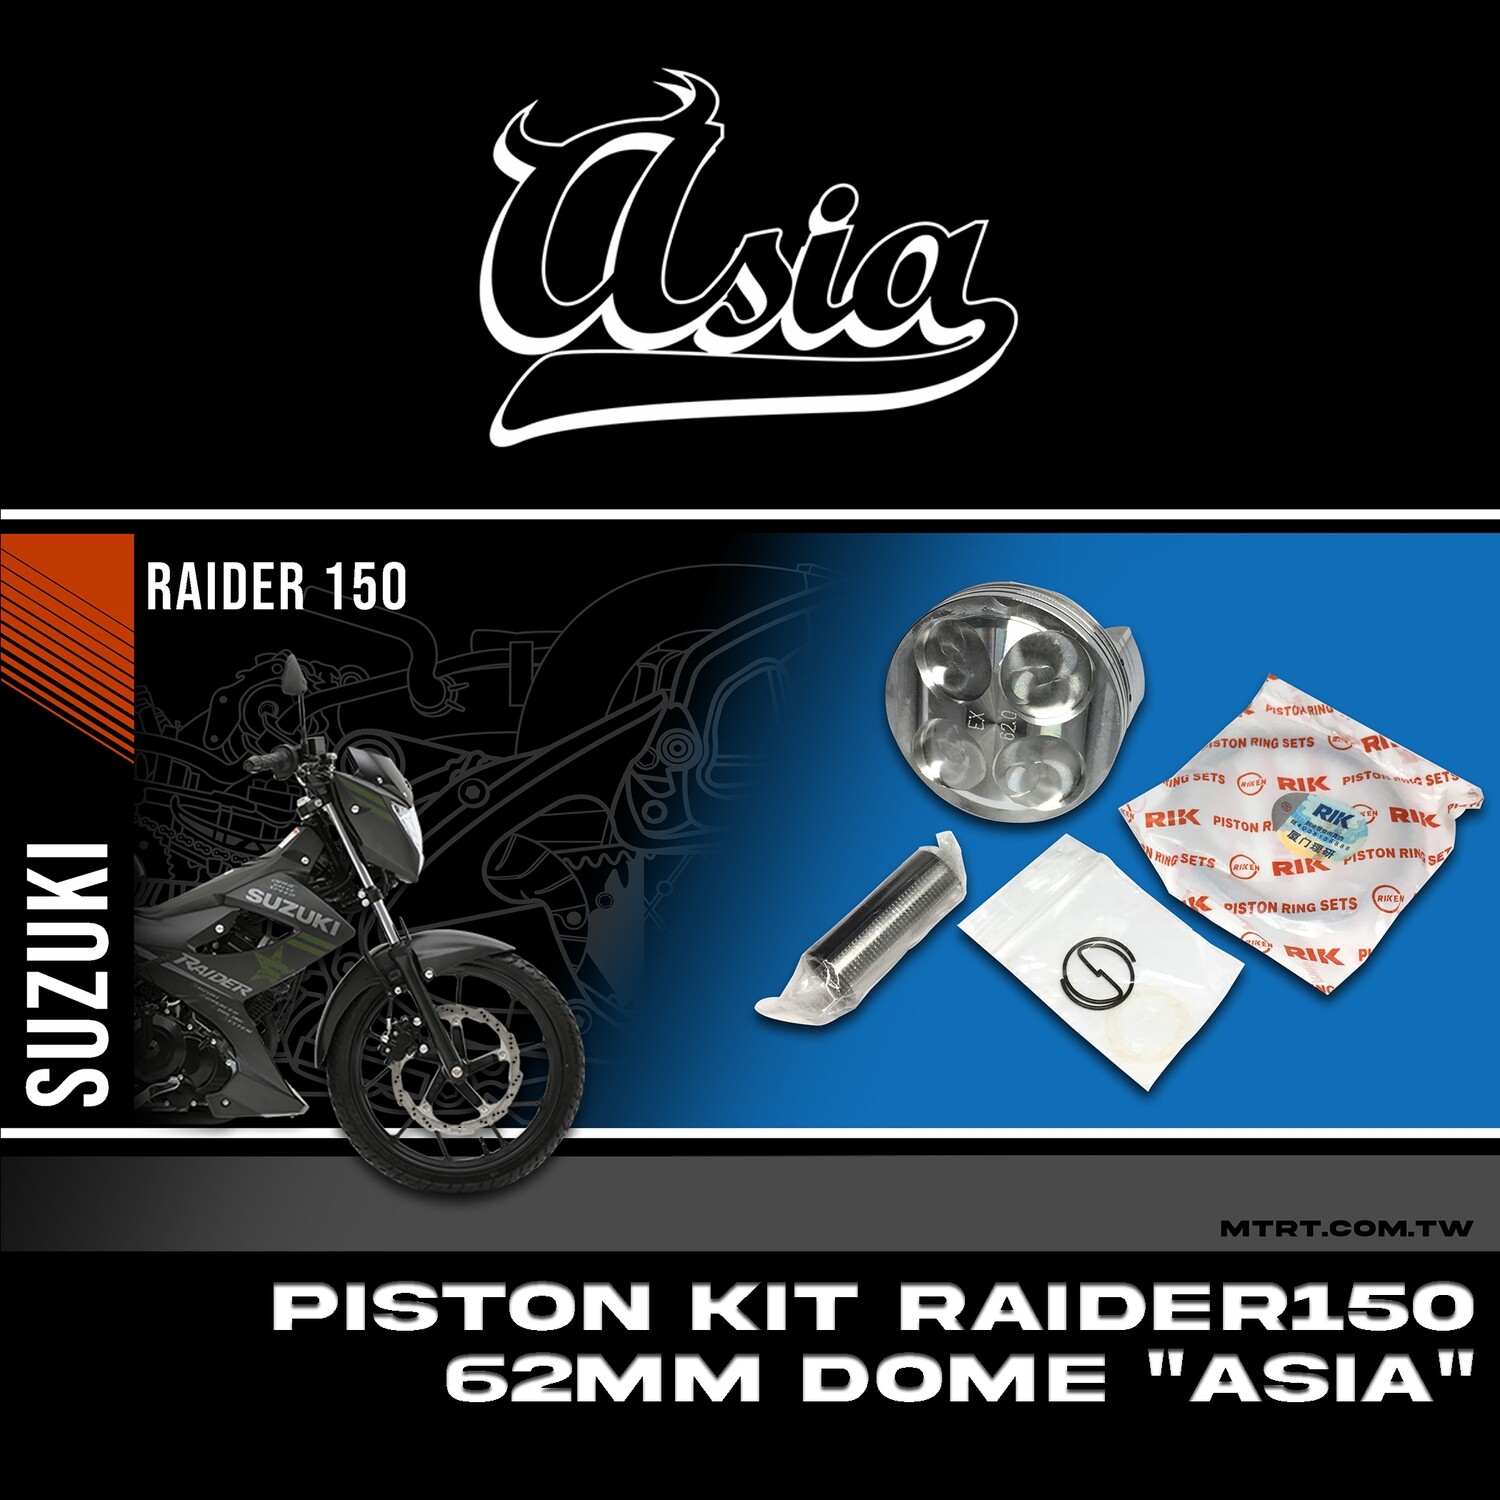 PISTON KIT RAIDER150 62MM dome "Asia"